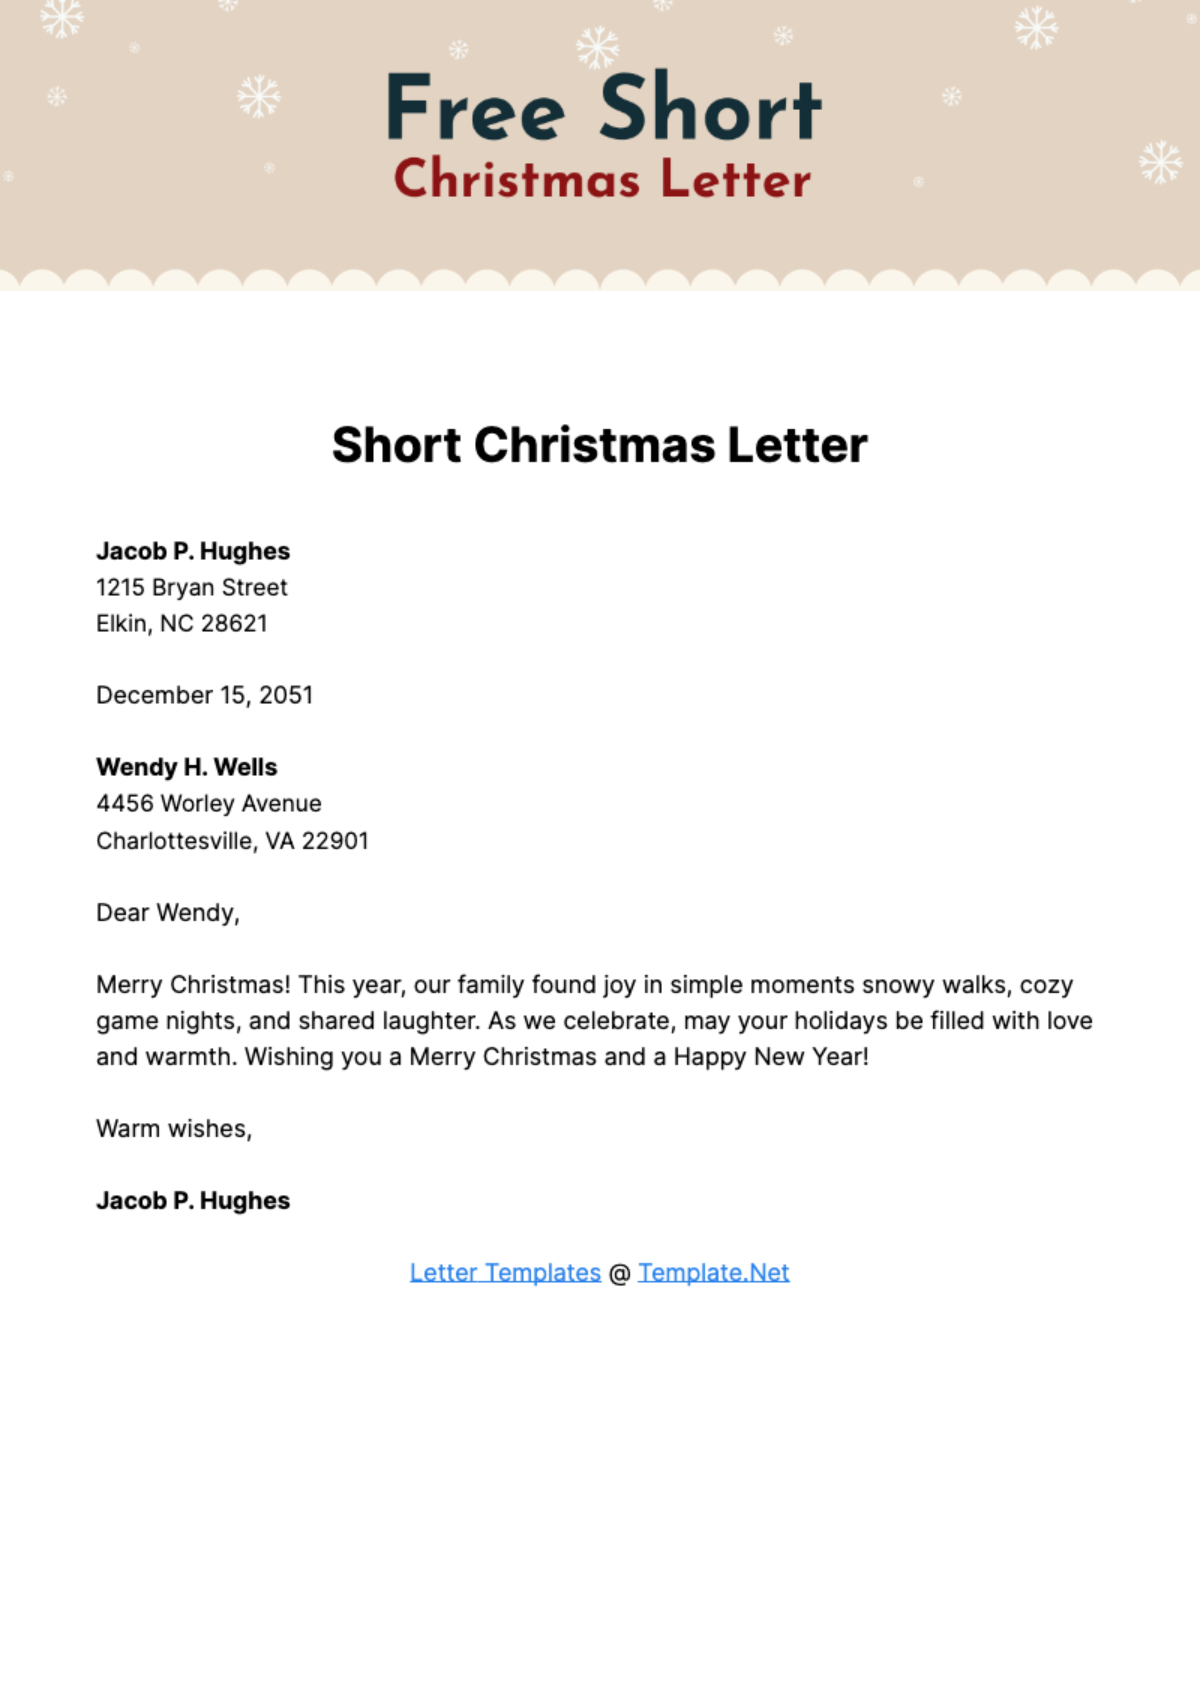 Short Christmas Letter Template